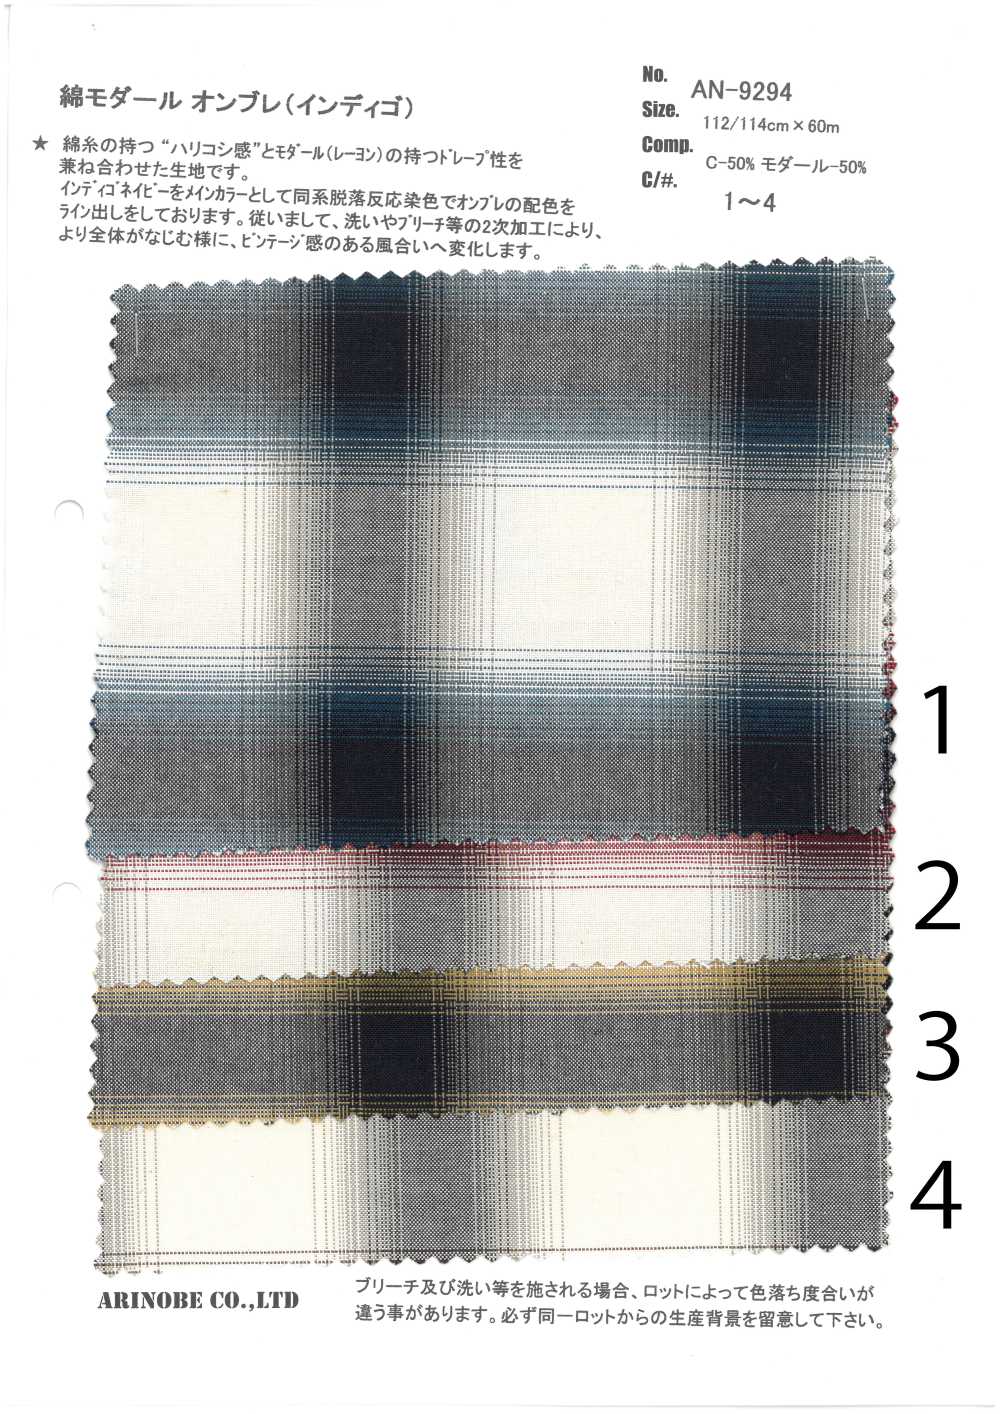 AN-9294 Indigo Coton Modal Ombre[Fabrication De Textile] ARINOBE CO., LTD.